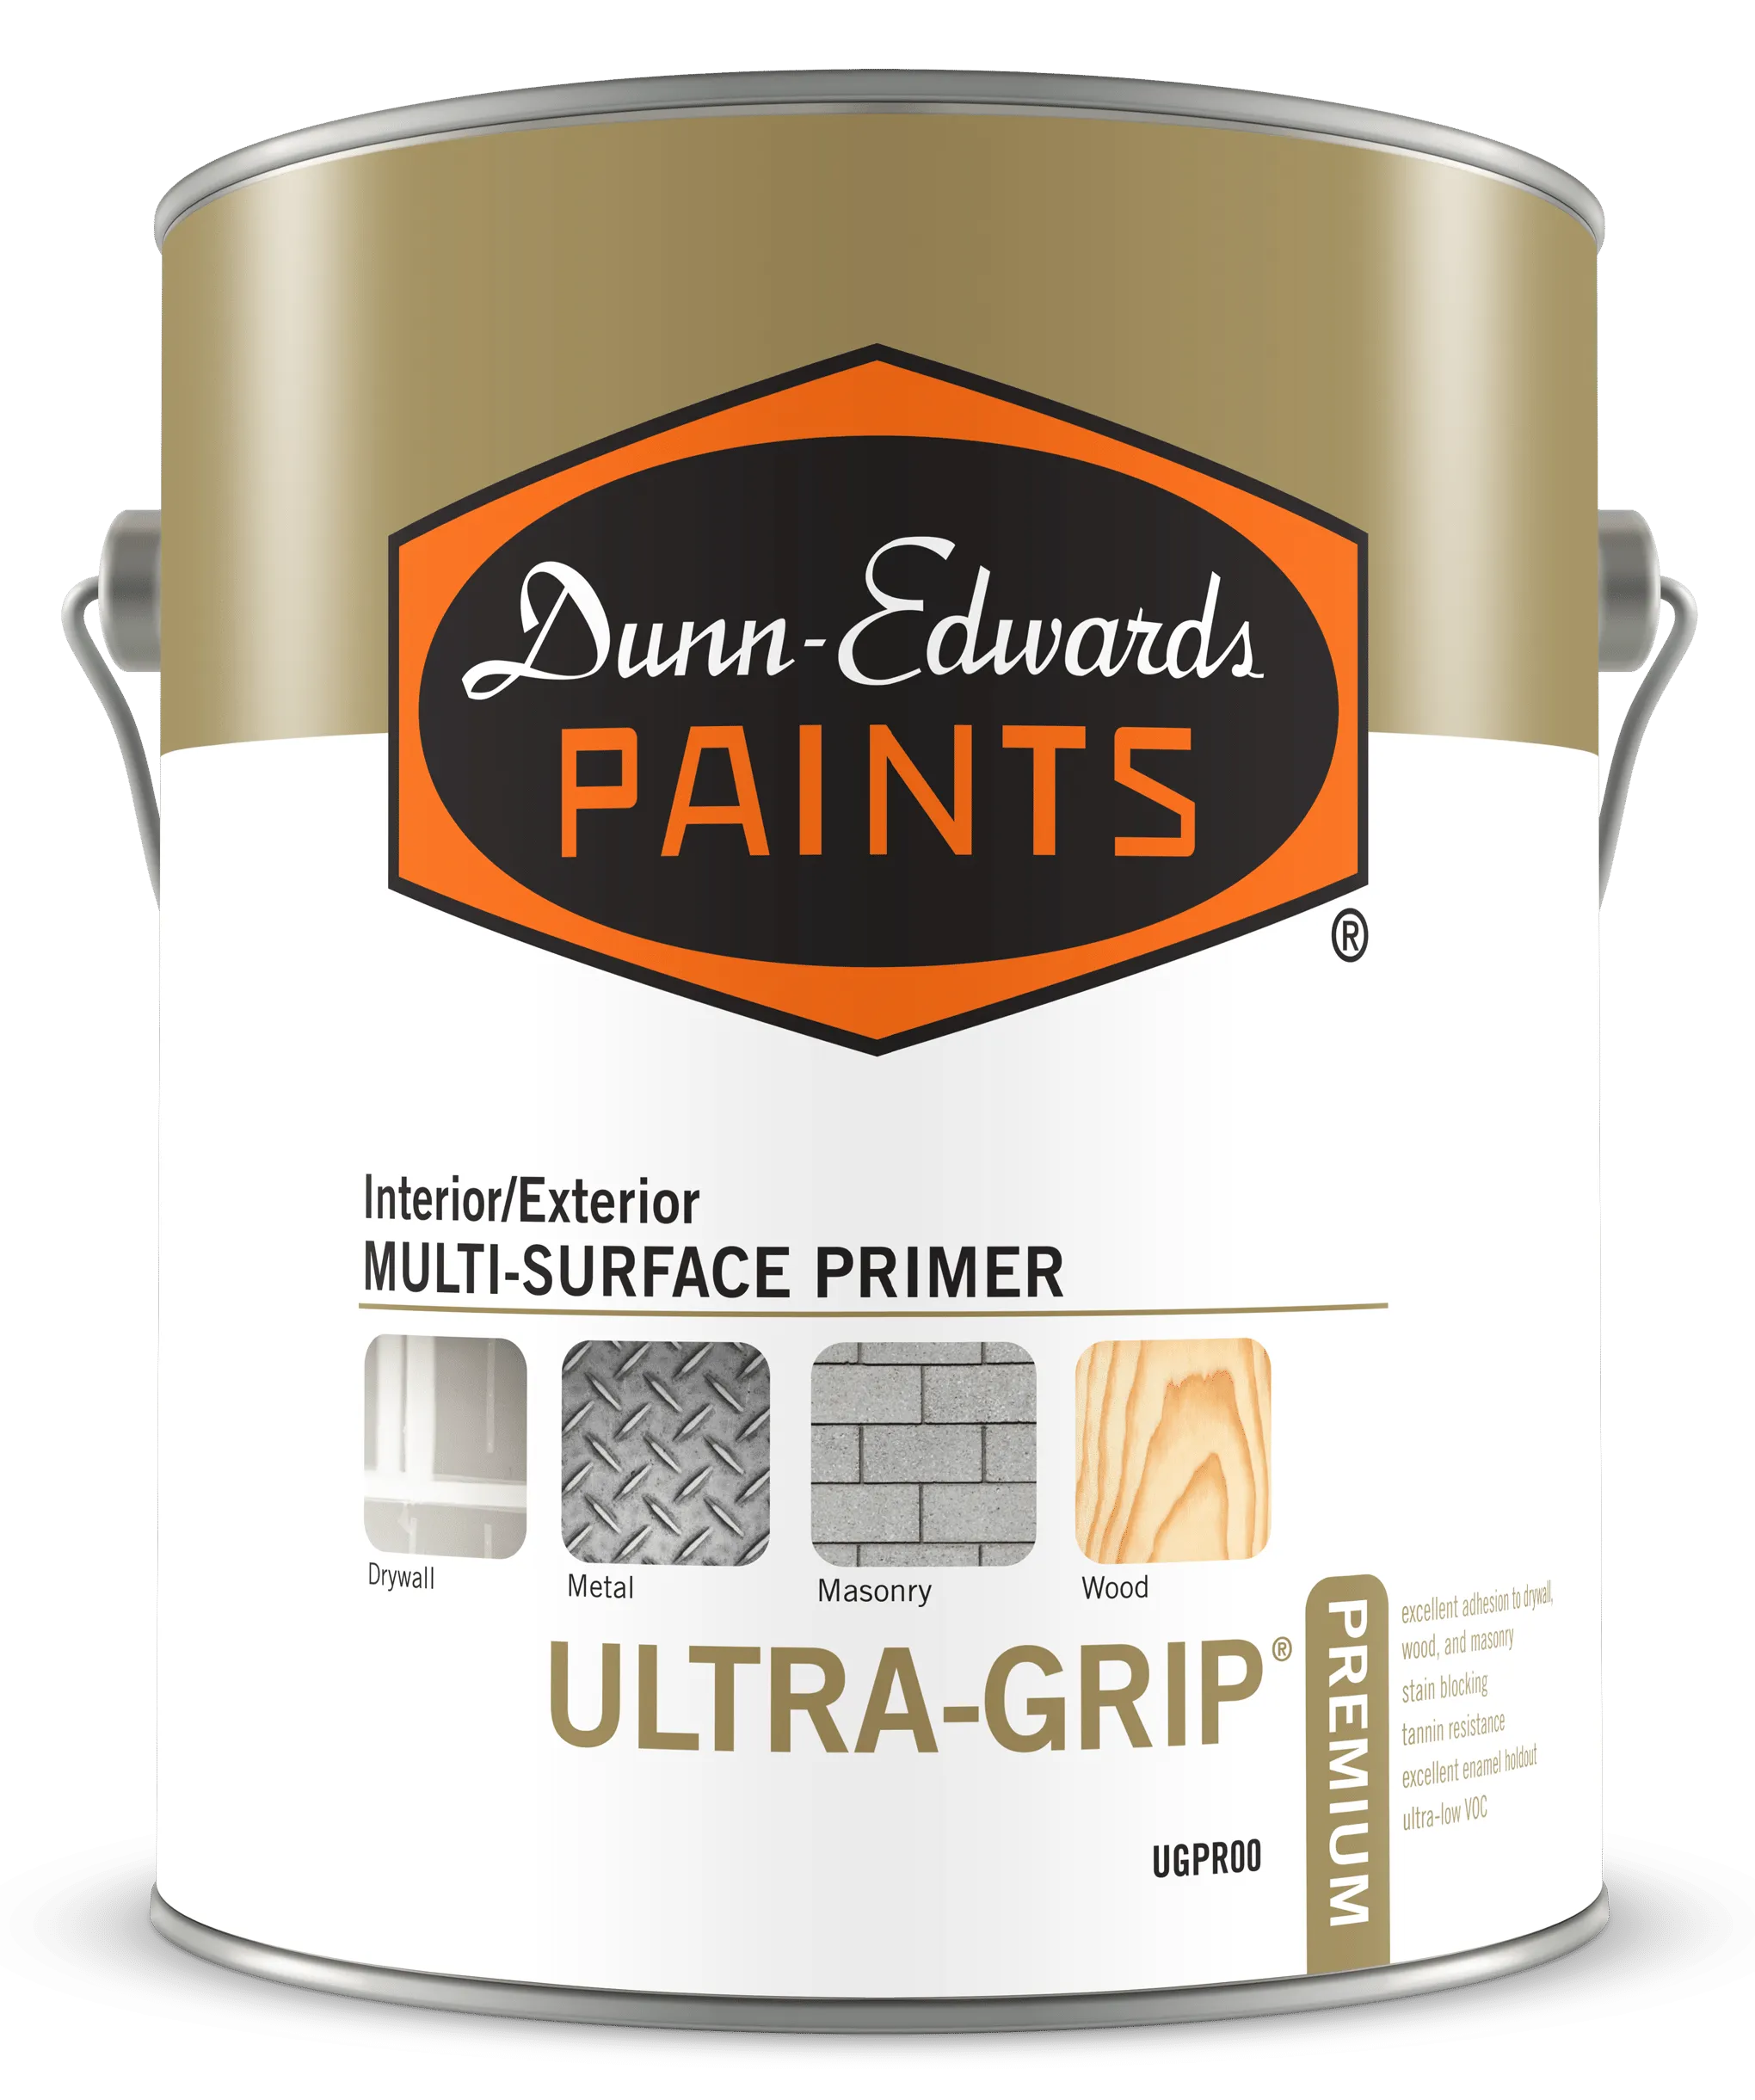 ULTRA-GRIP Premium Interior/Exterior Multi-Surface Primer Can